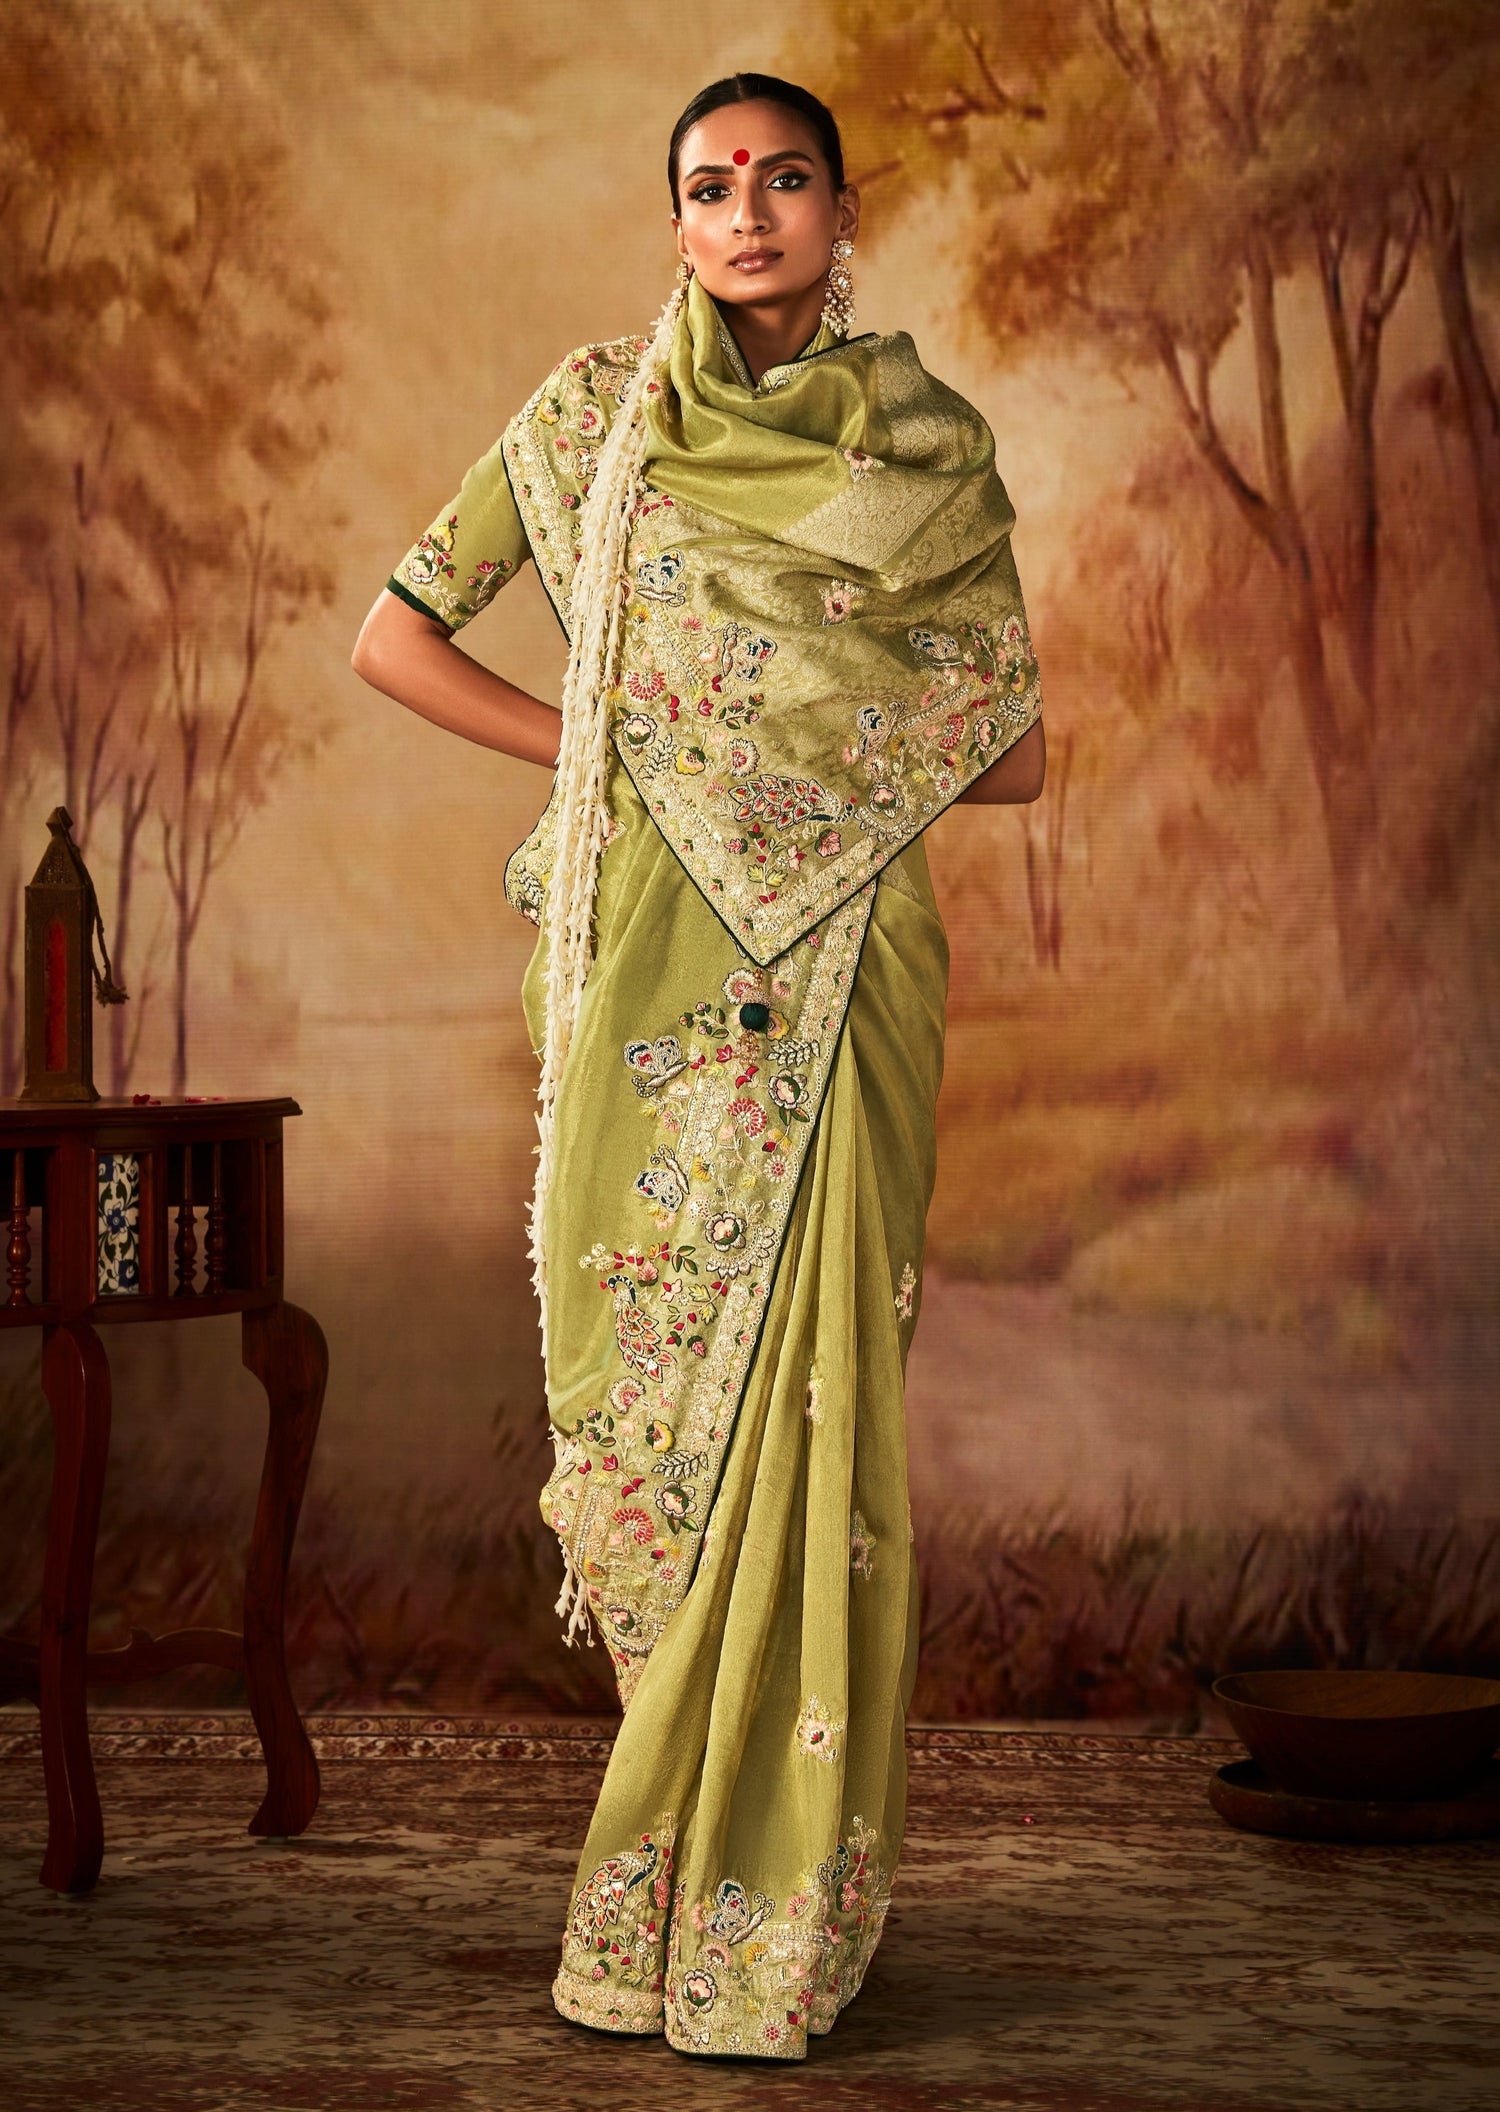 Buy a Dark Green Heavy Embroidered Wedding Saree On Rutbaa